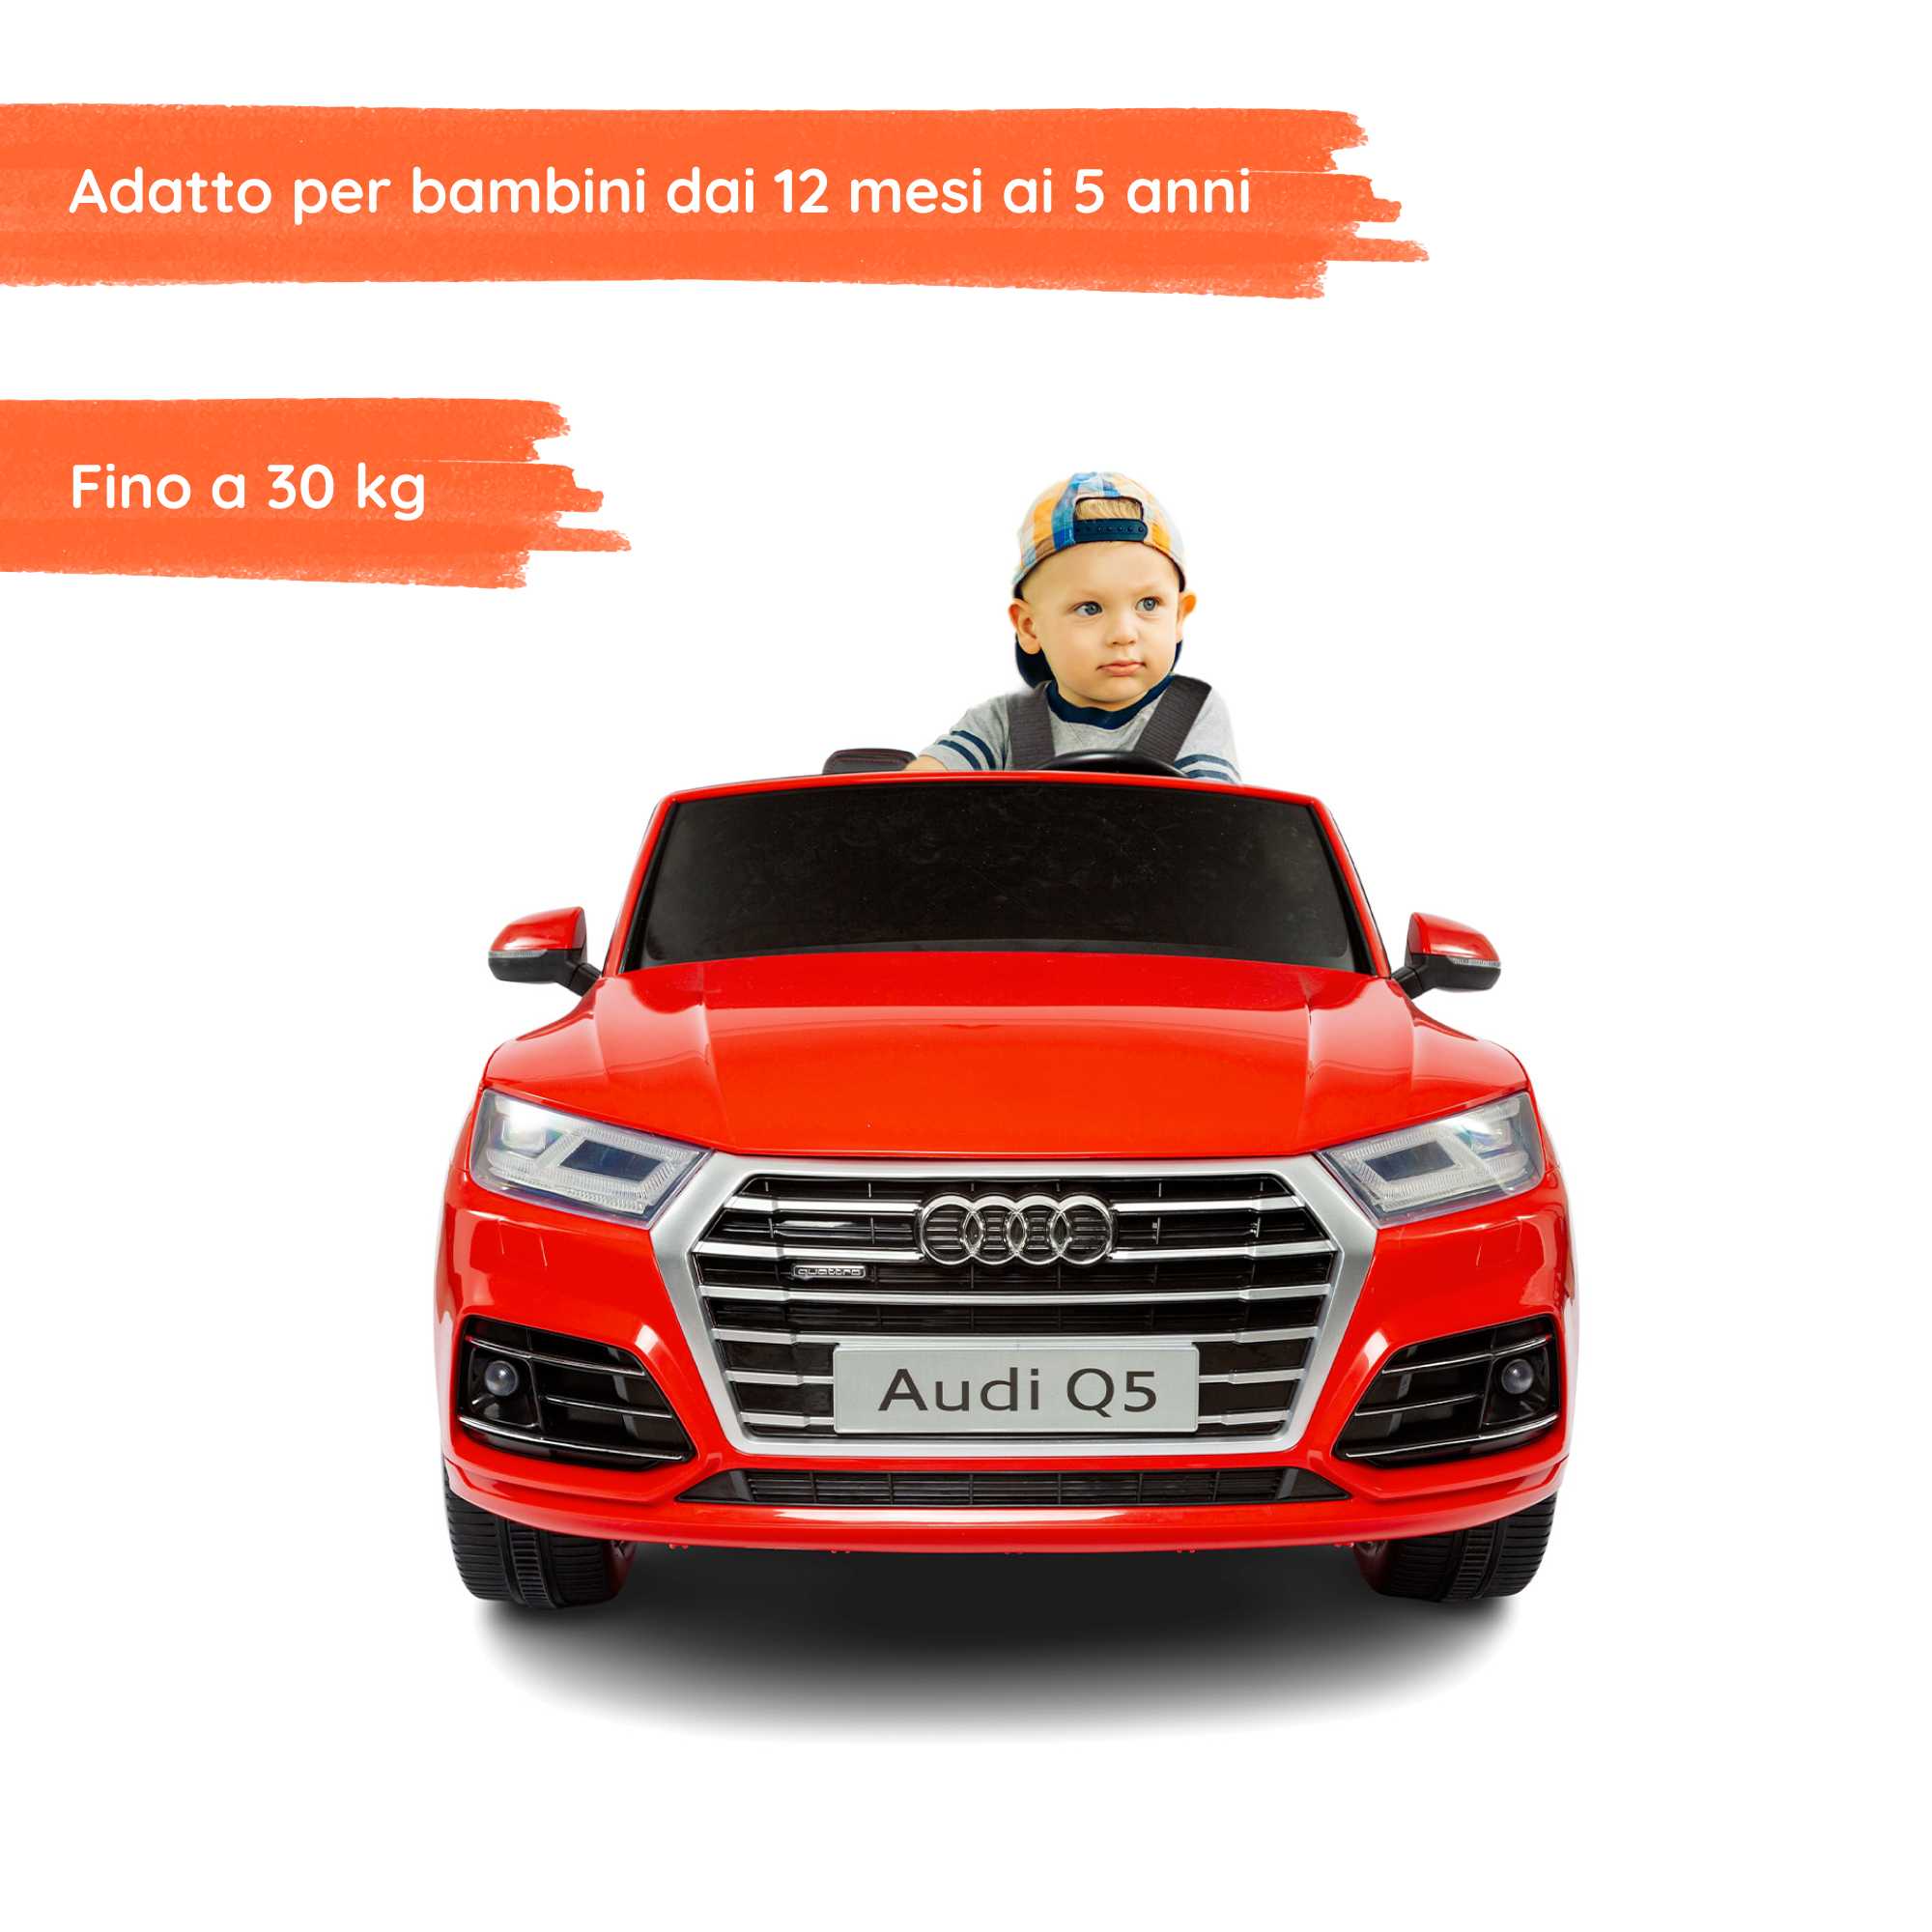 Audi Q5 Rossa con bambino